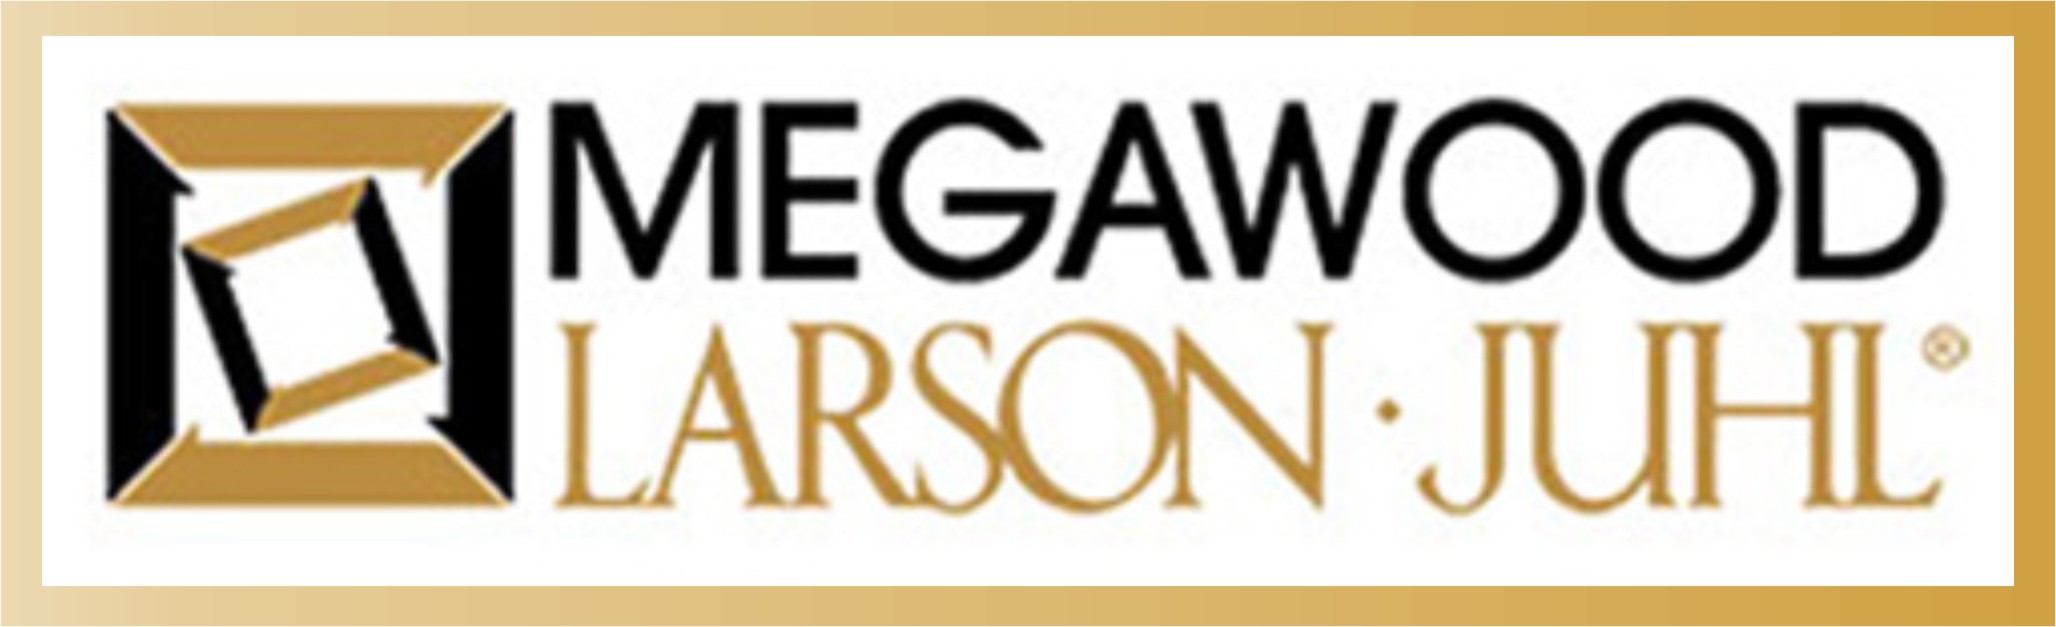 Megawood logo